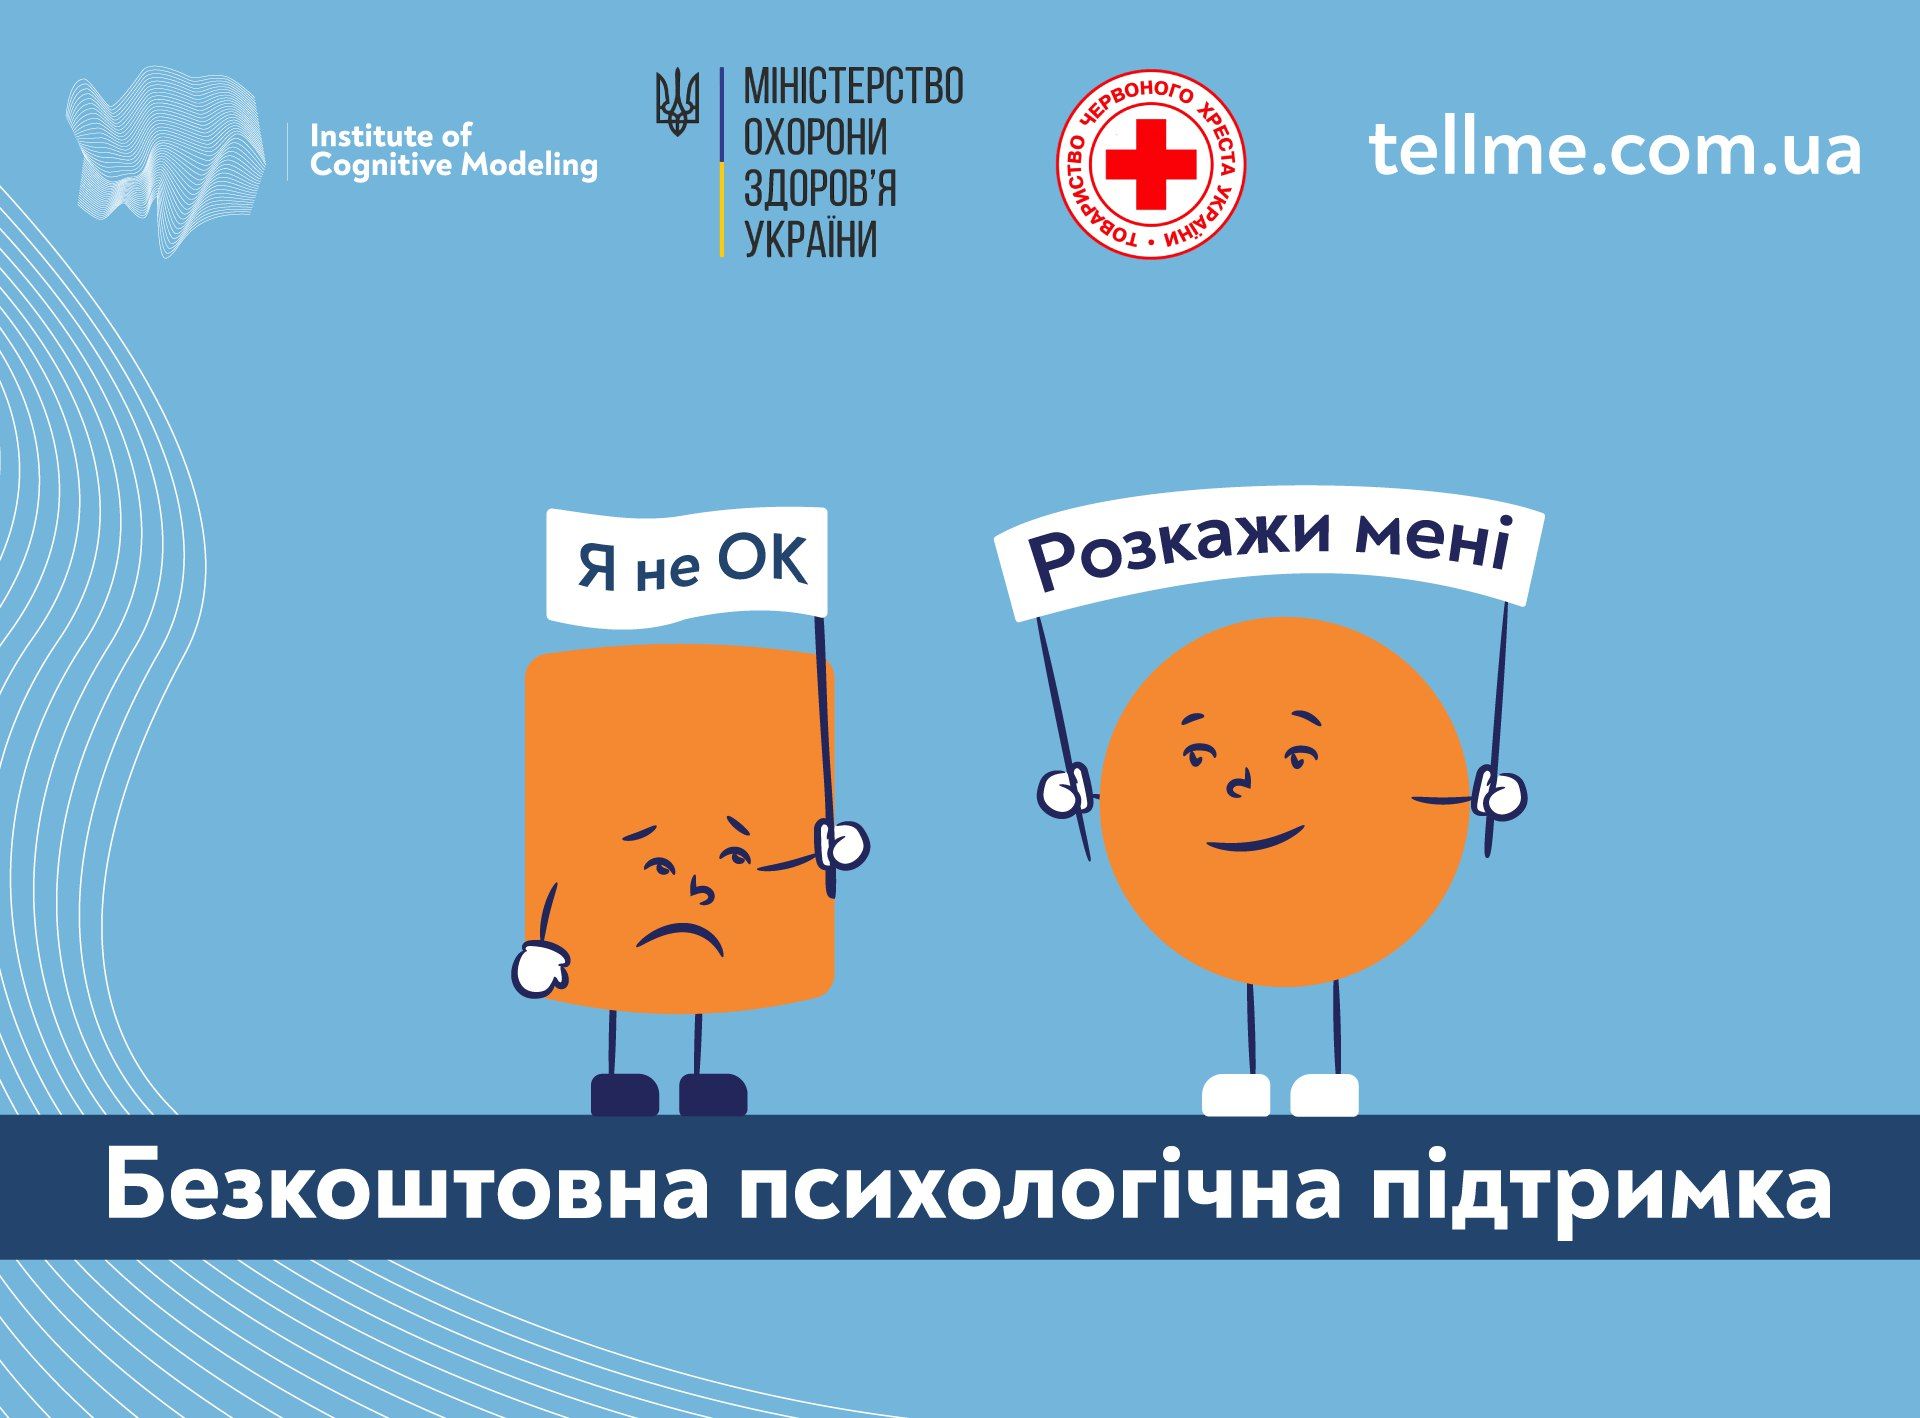 В Украине запустили онлайн-платформу для бесплатной психологической помощи